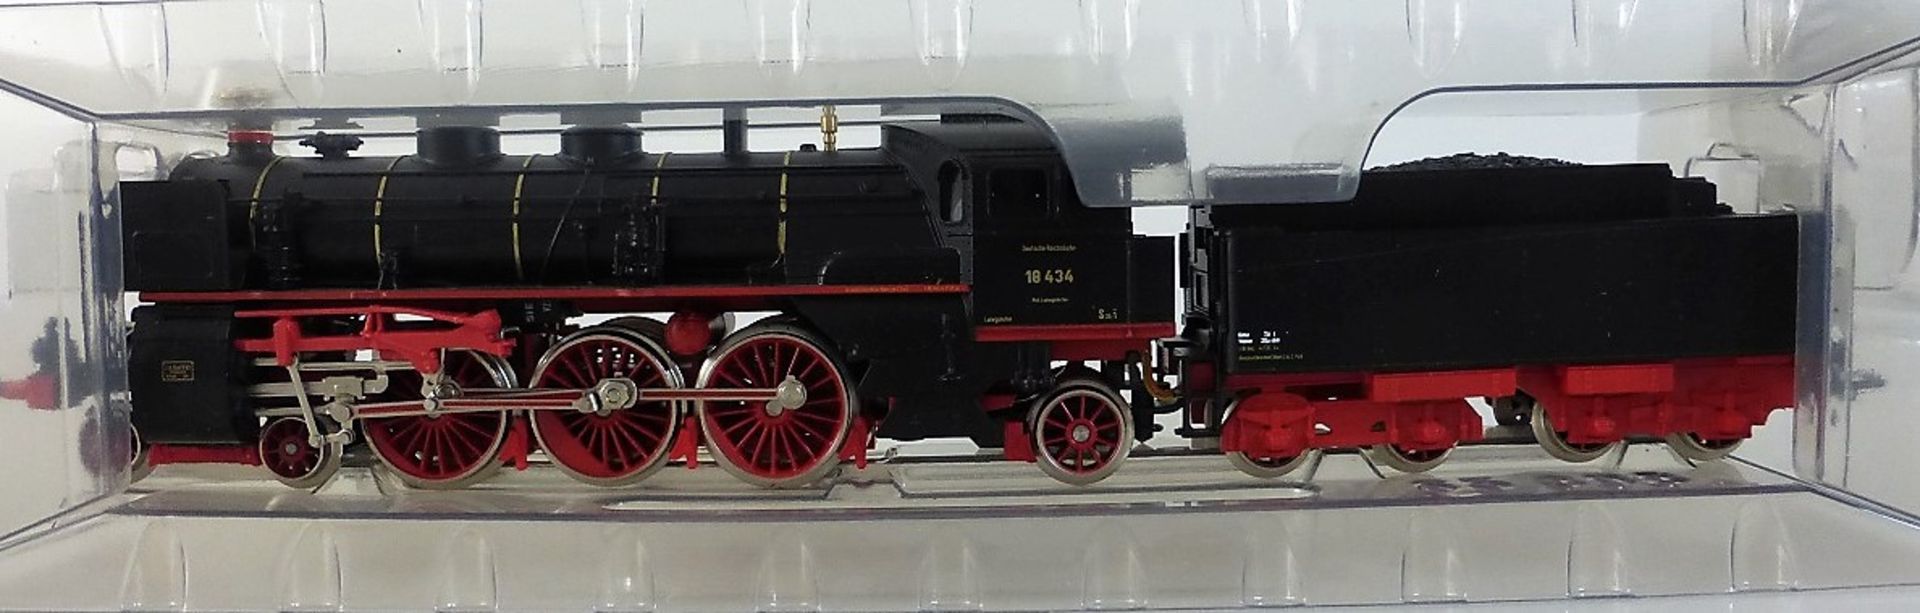 Märklin Lokomotive 3318 - Image 2 of 2